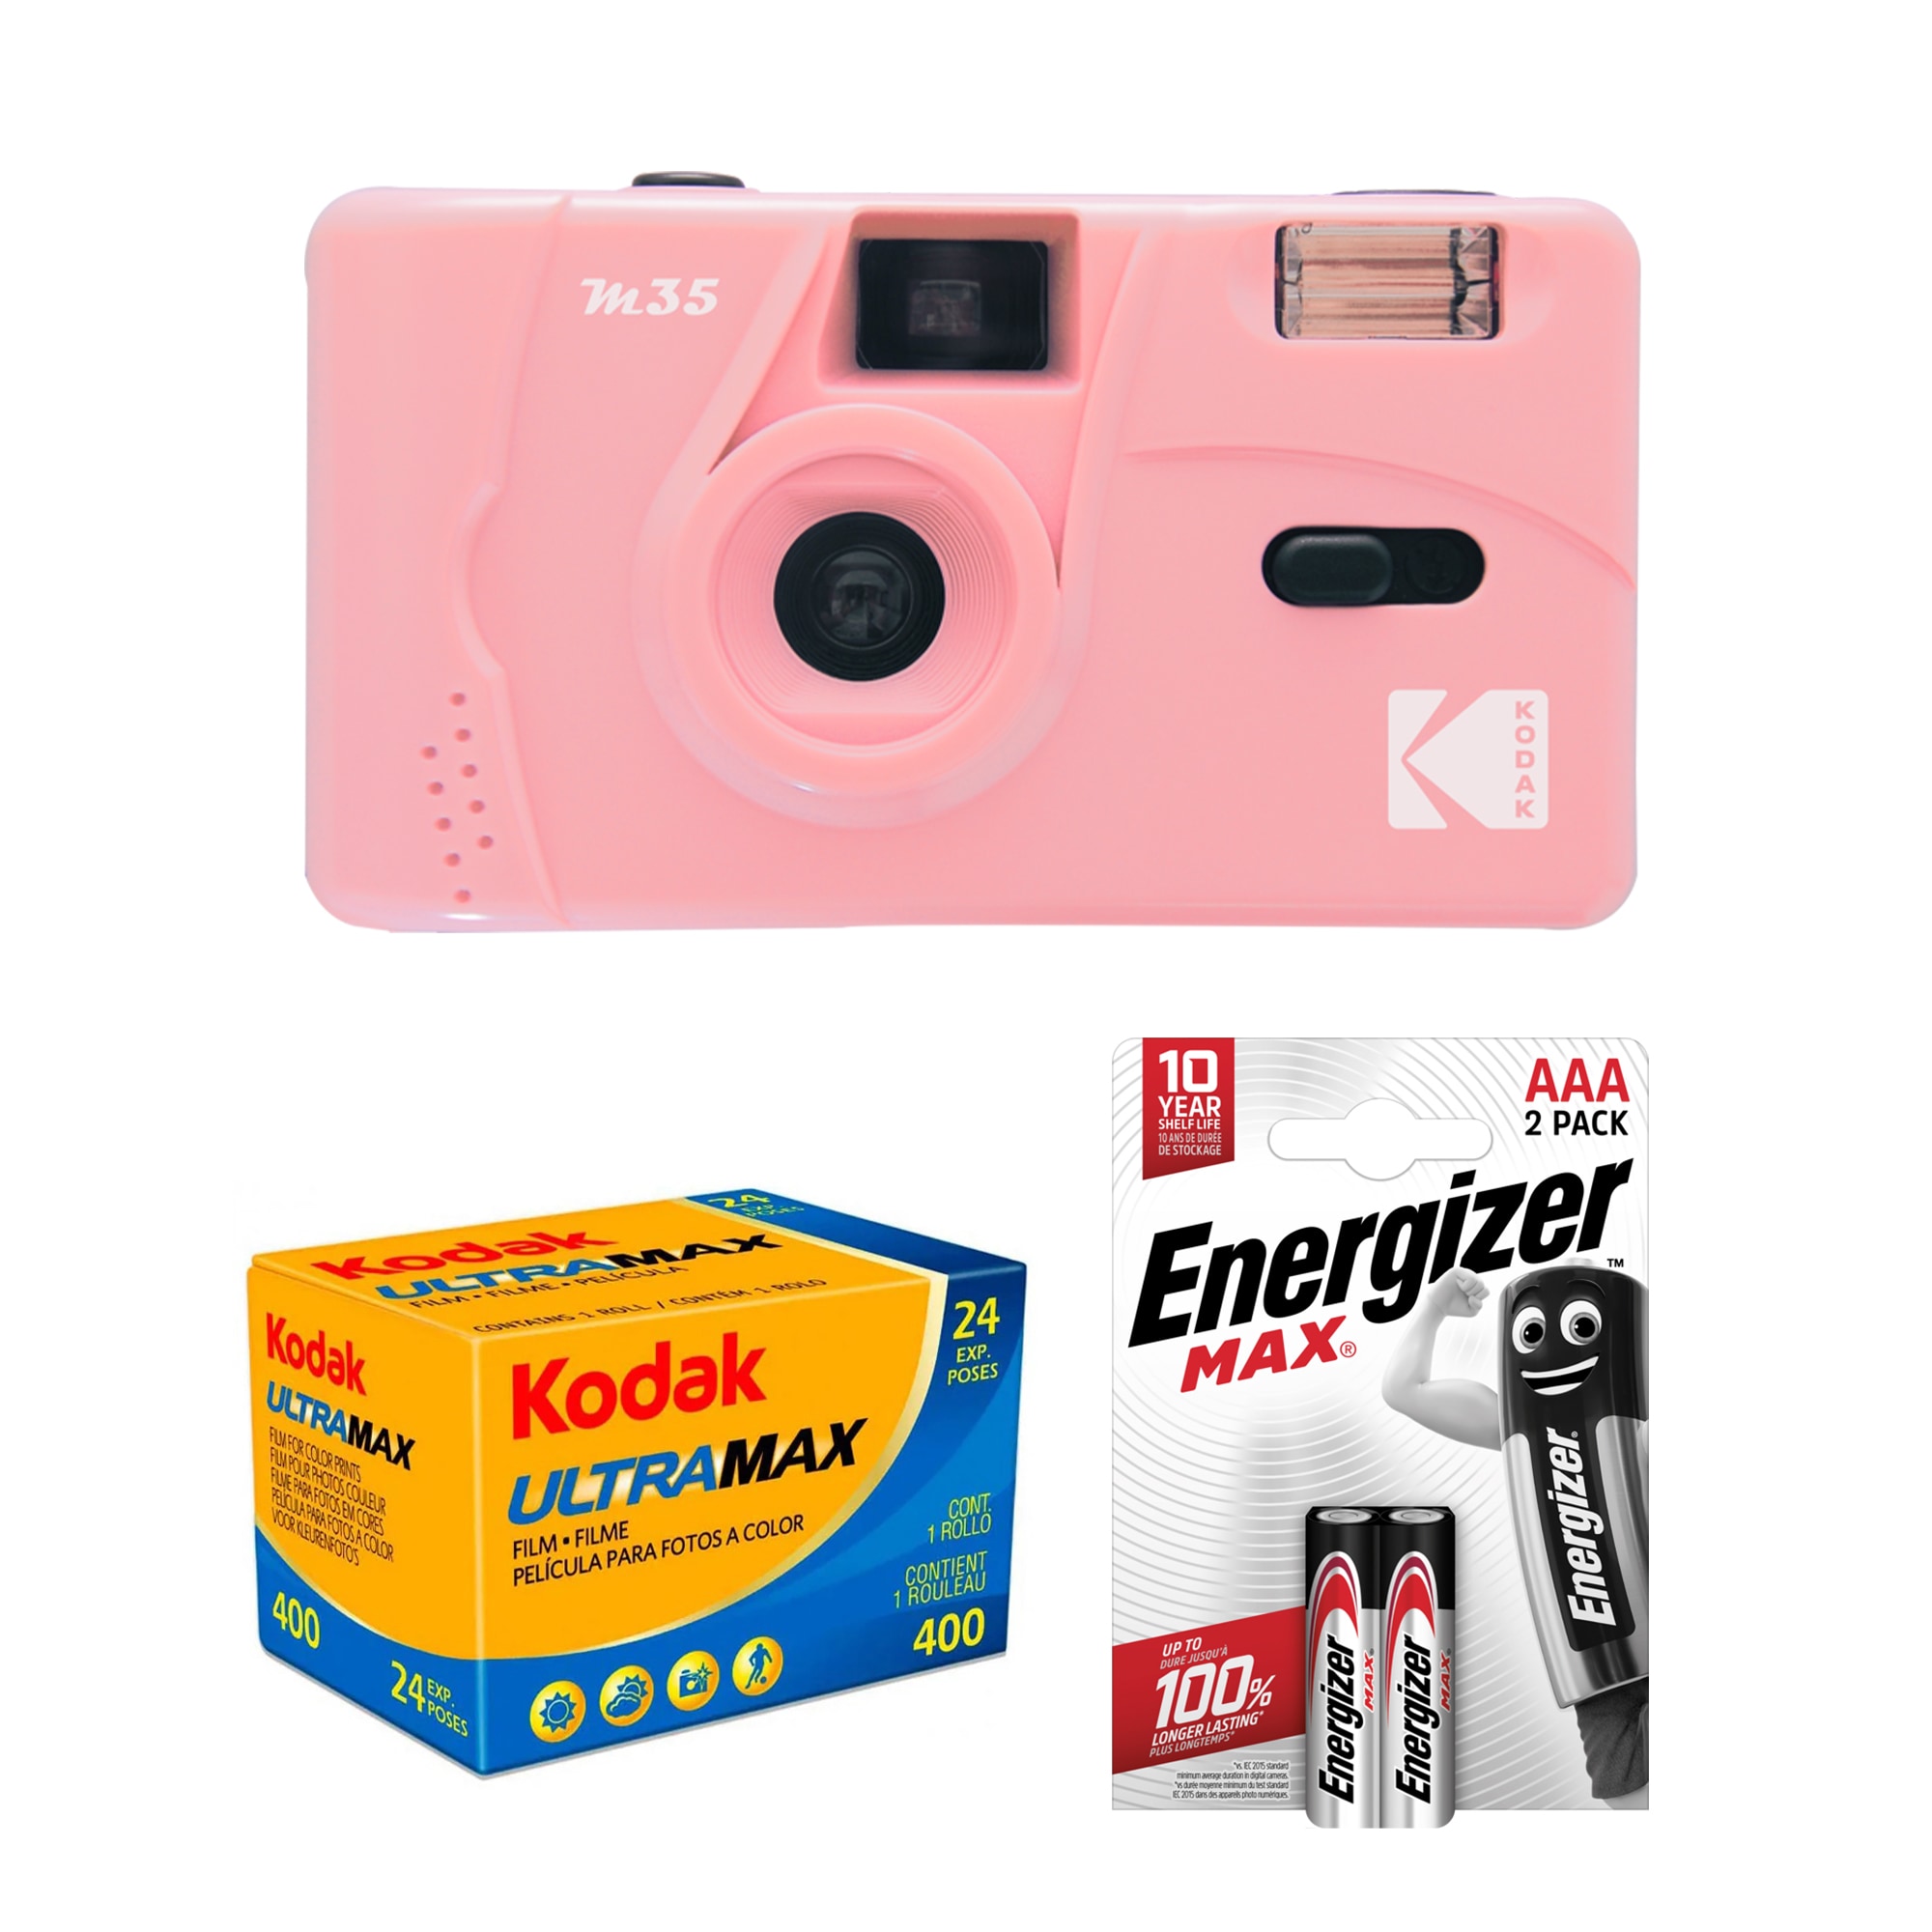 Tetenal Kodak M35 Reusable Camera Pink + UltraMax 400 + 2st AAA batterier